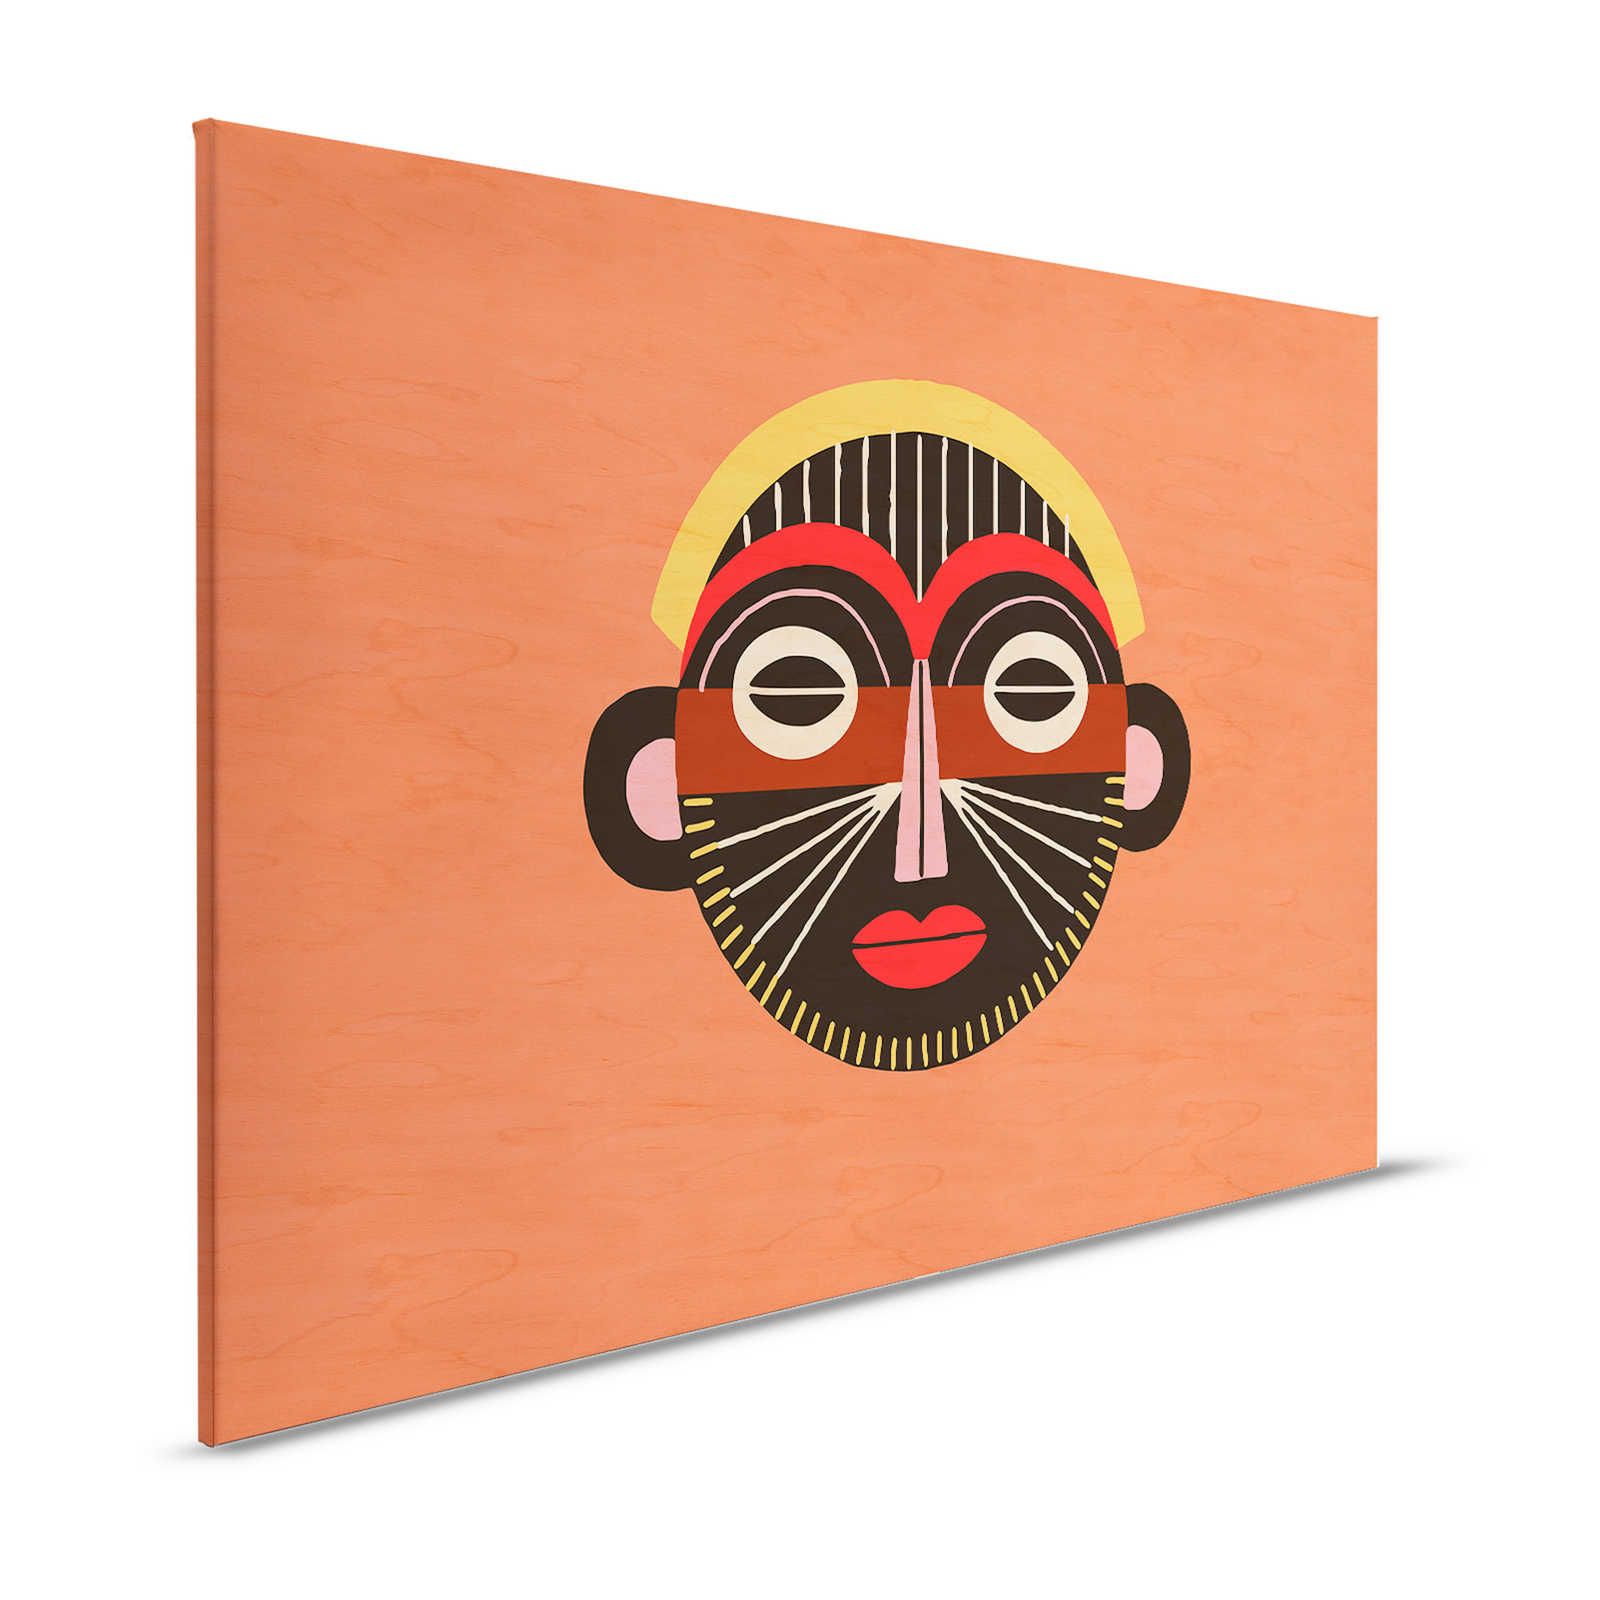 Oltremare 2 - Maschera in tela etnica con disegno tribale - 1,20 m x 0,80 m
